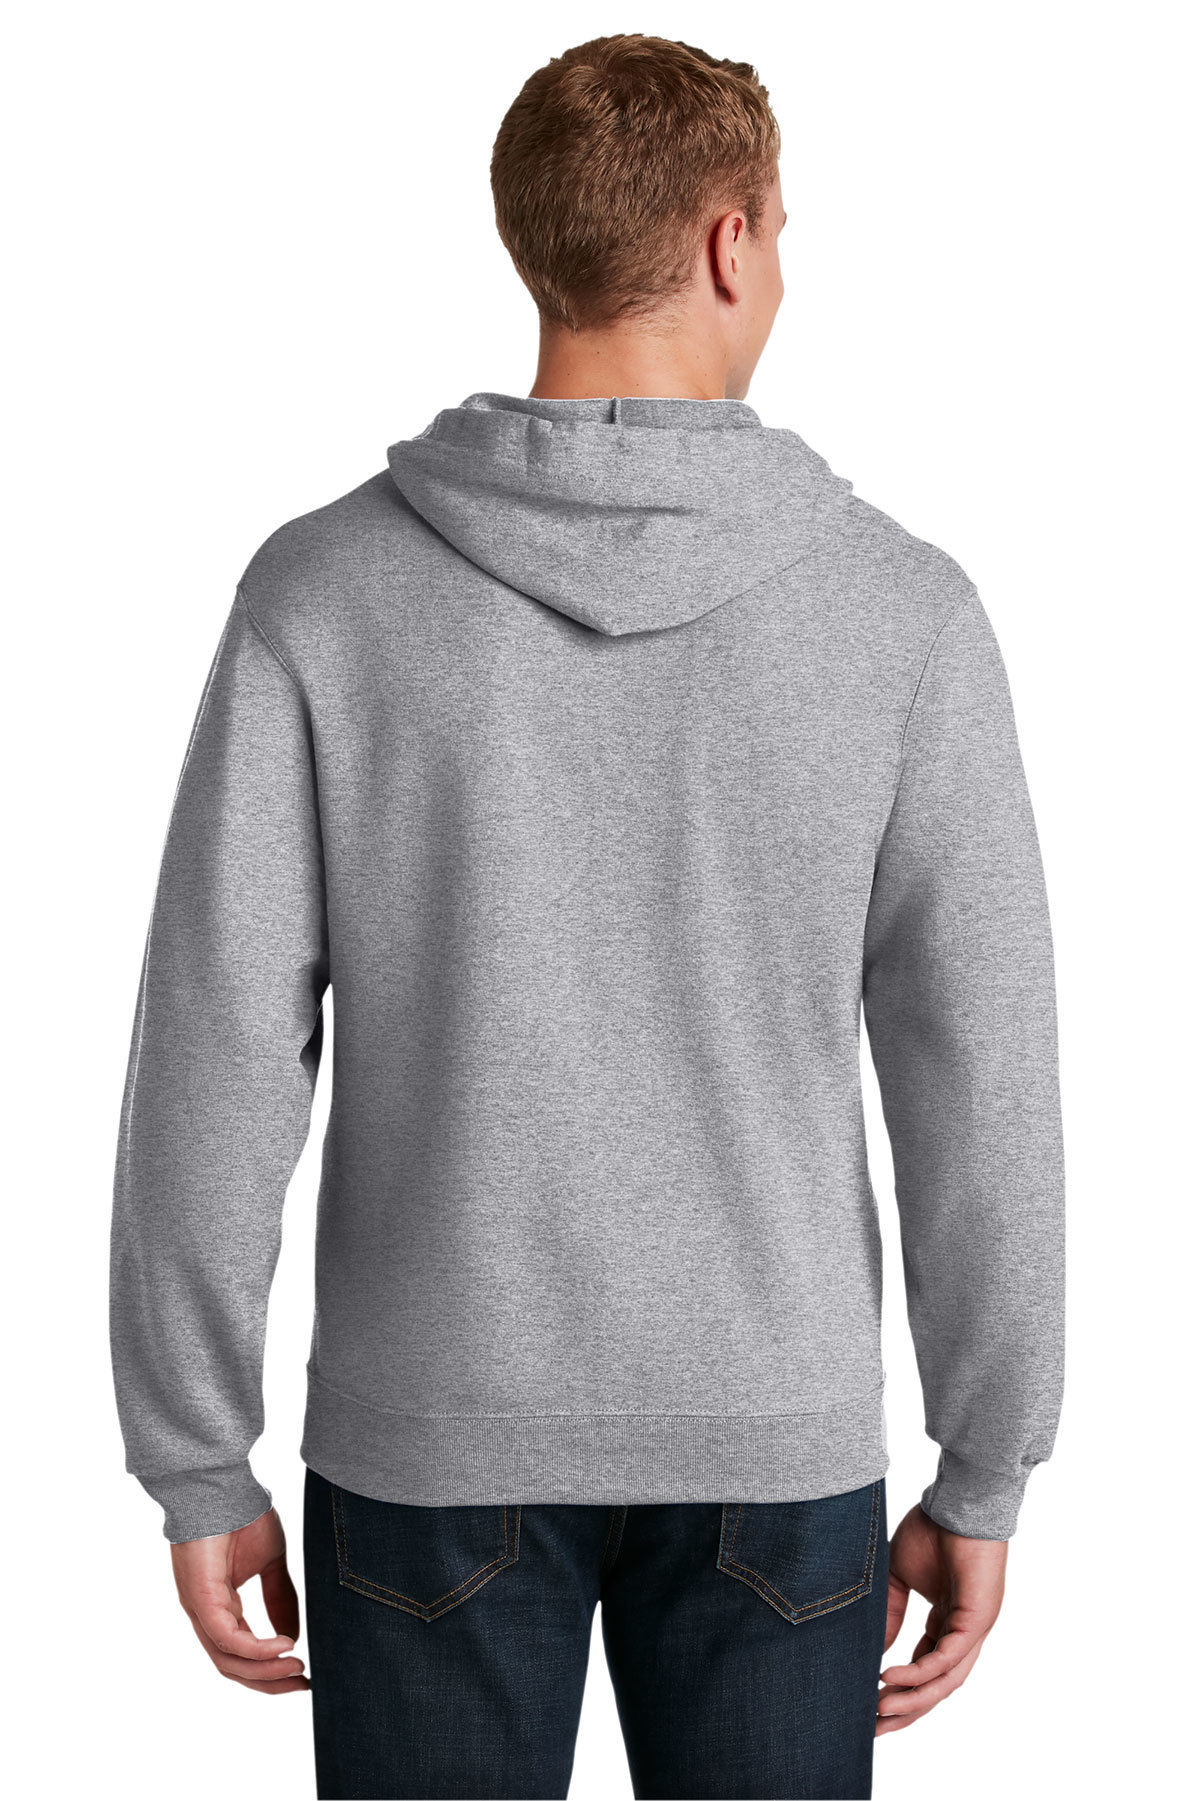 Jerzees - NuBlend Full-Zip Hooded Sweatshirt | Product | SanMar